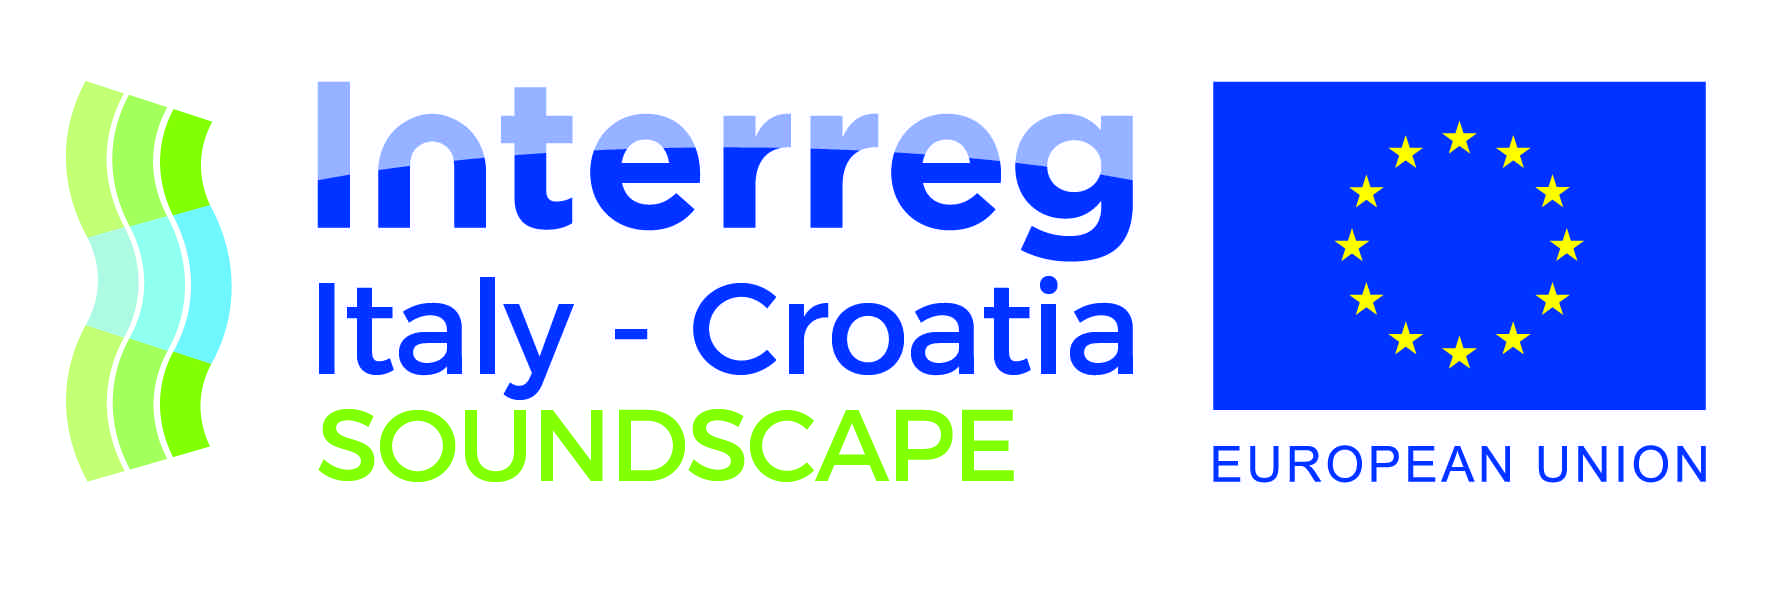 soundscape project logo